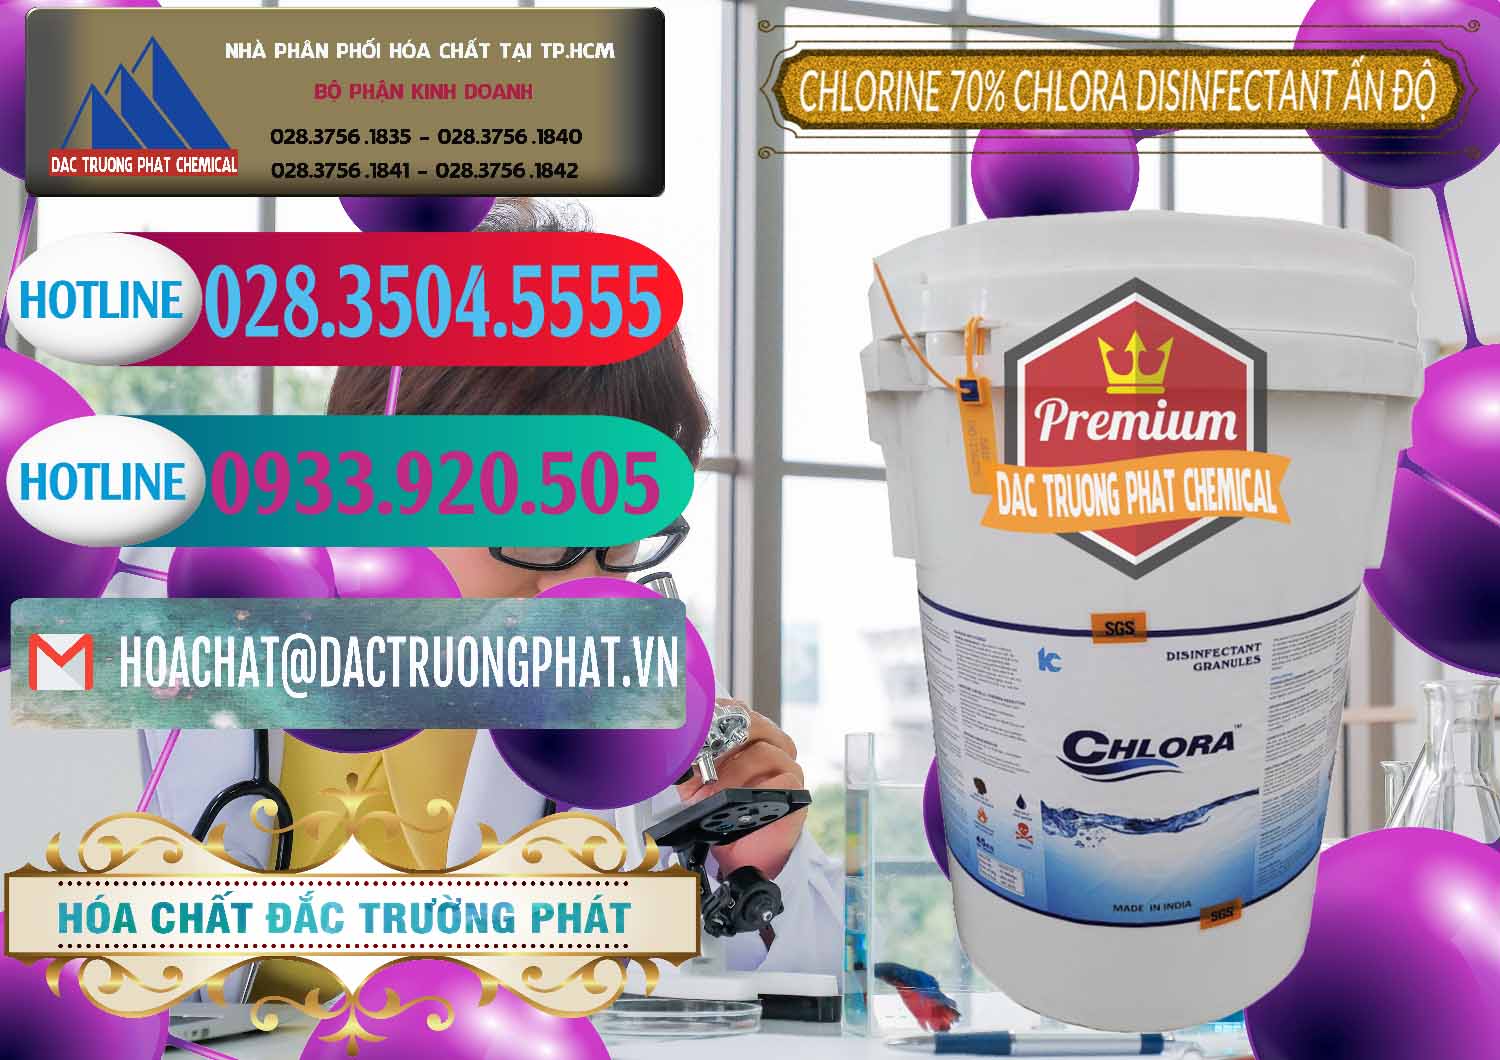 Cty chuyên phân phối và bán Chlorine – Clorin 70% Chlora Disinfectant Ấn Độ India - 0213 - Chuyên nhập khẩu & cung cấp hóa chất tại TP.HCM - truongphat.vn